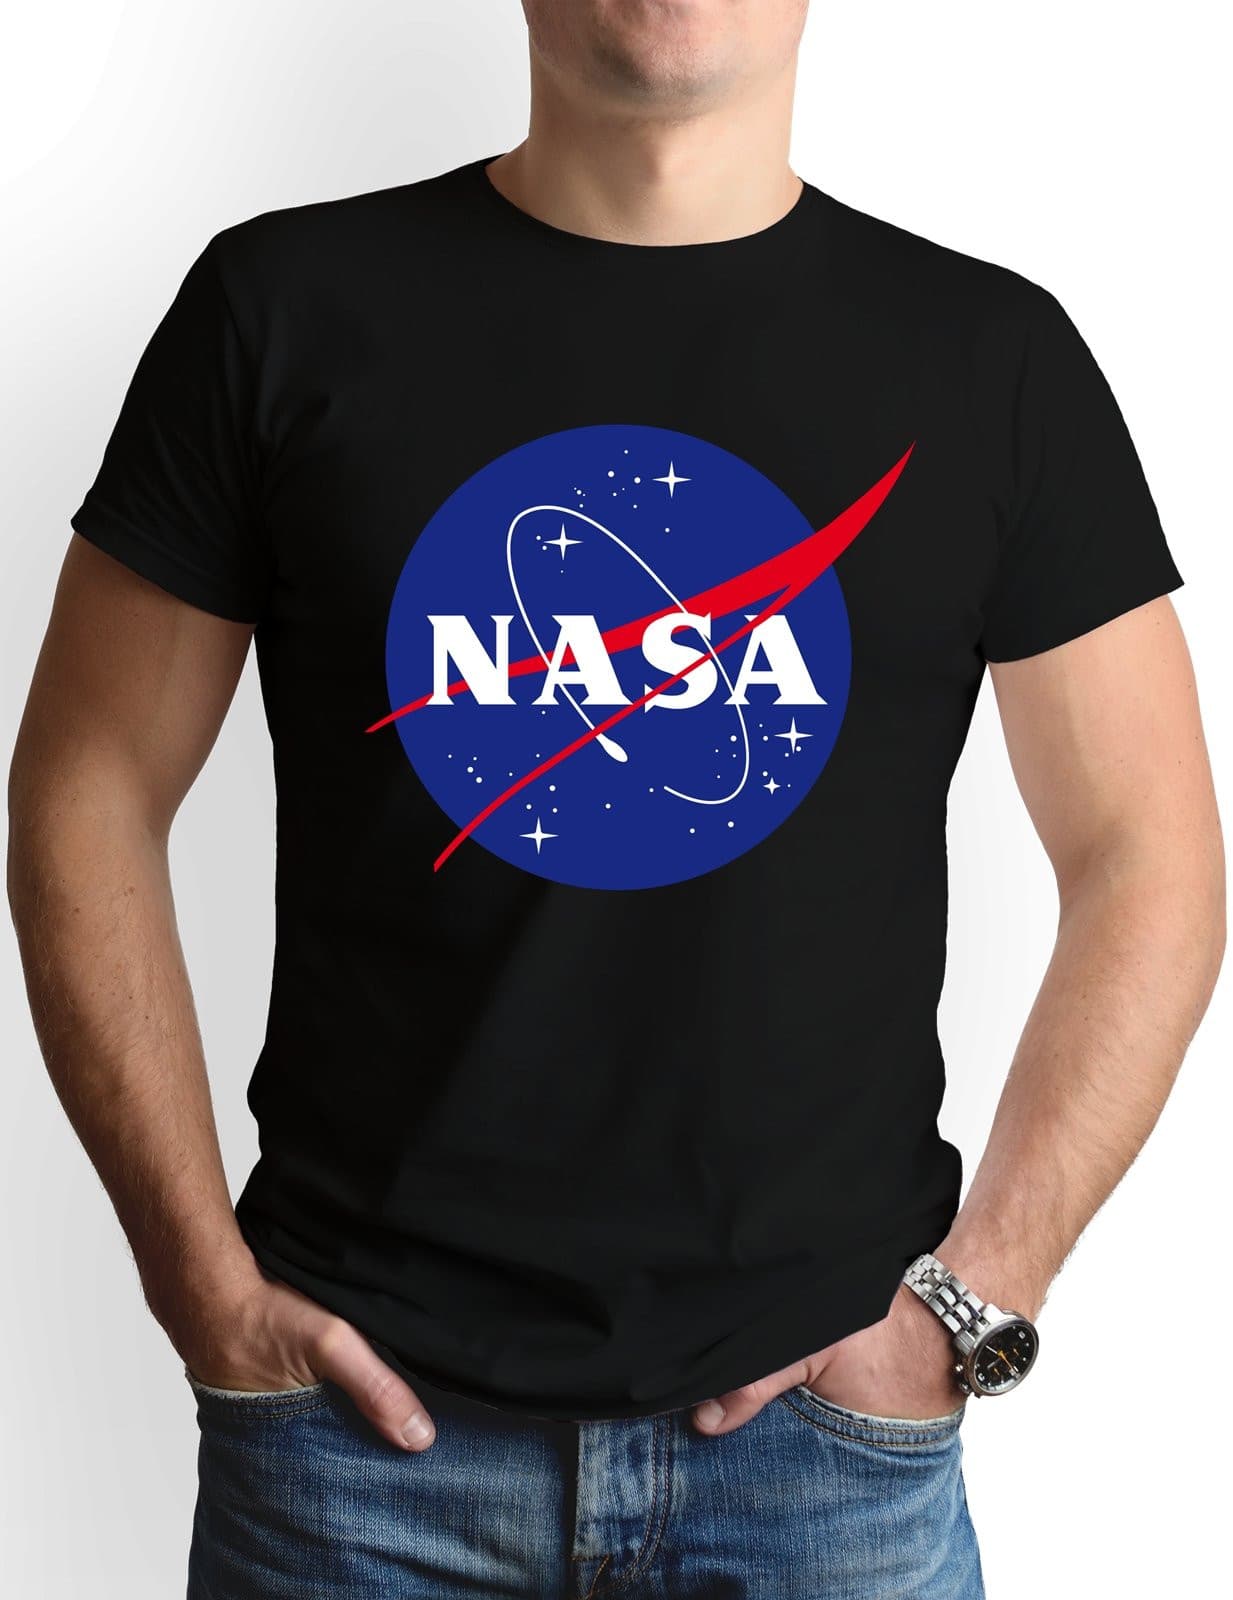 Bild: T-Shirt Herren - NASA Meatball Logo Geschenkidee